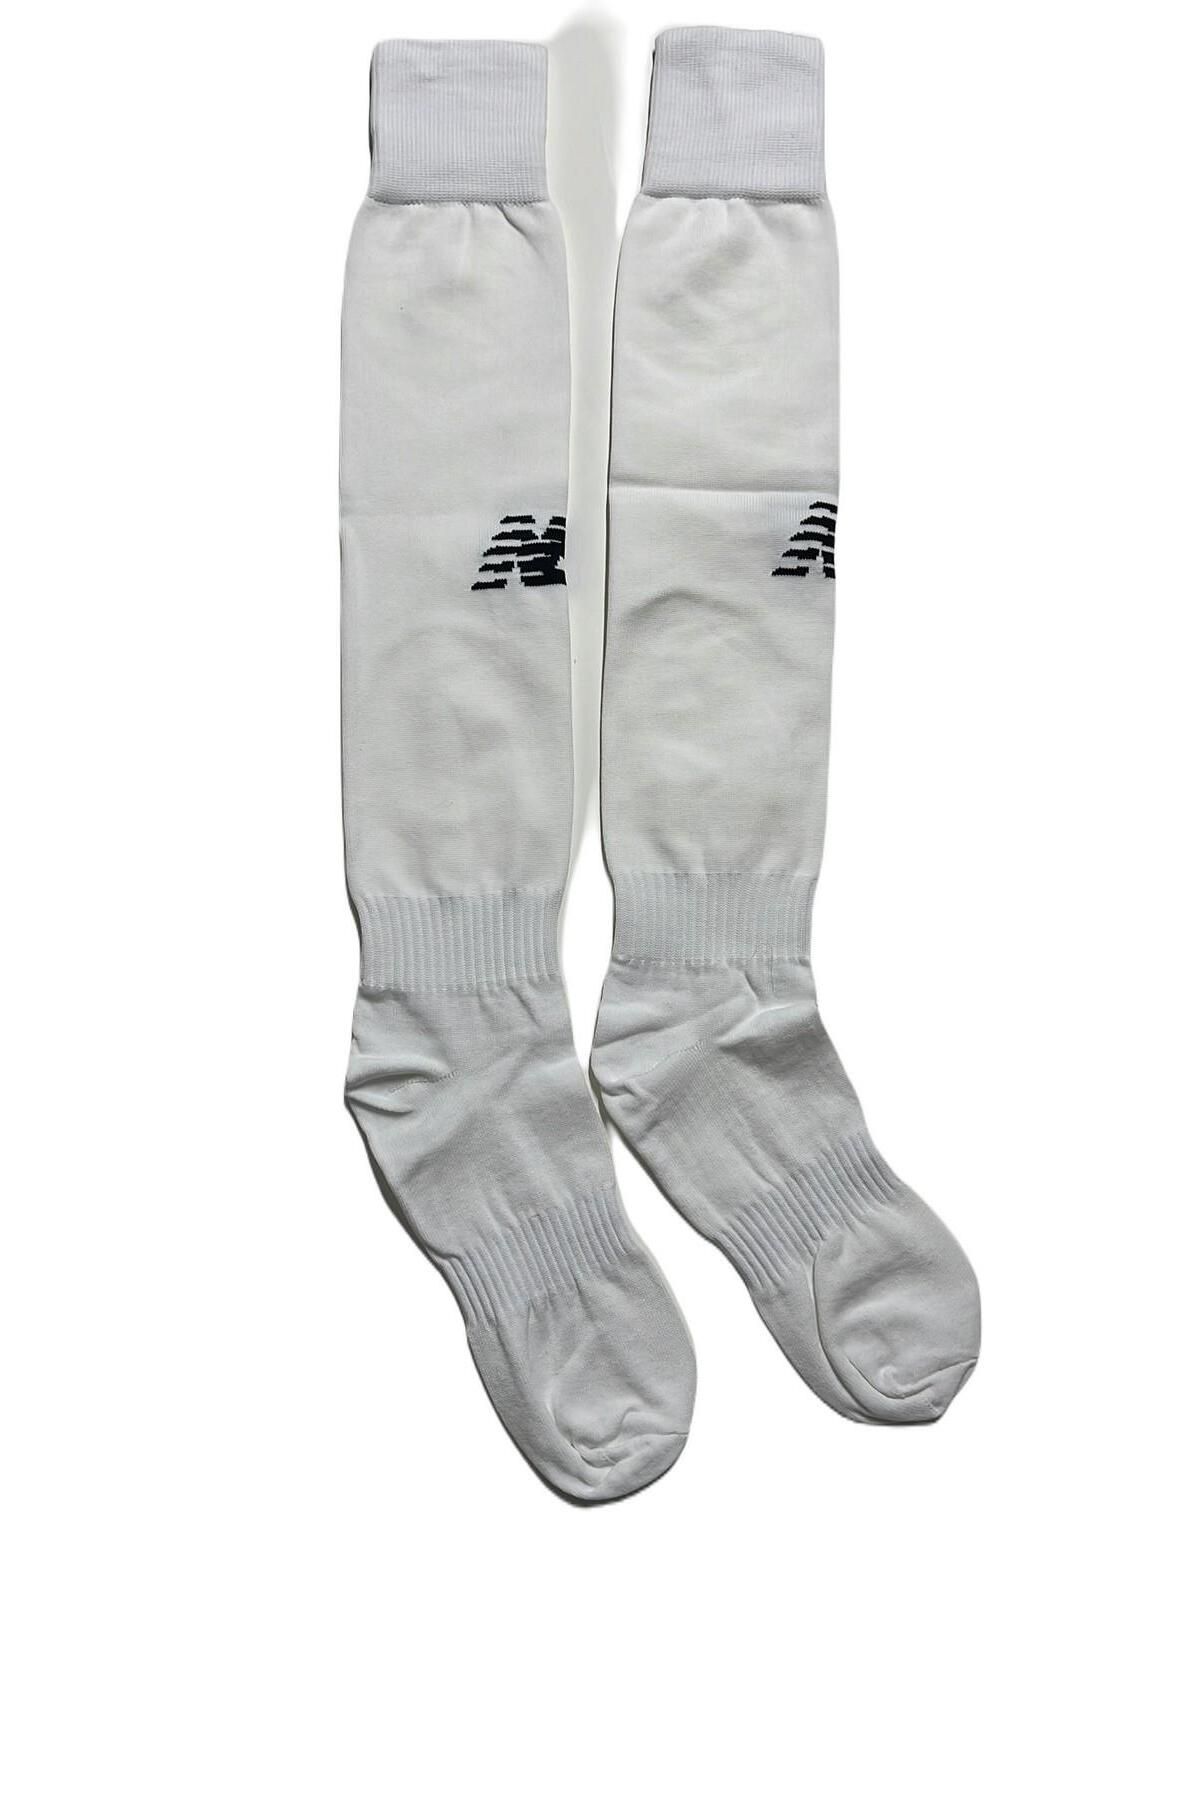 New Balance Nbsocks01 Erkek Spor Çorap